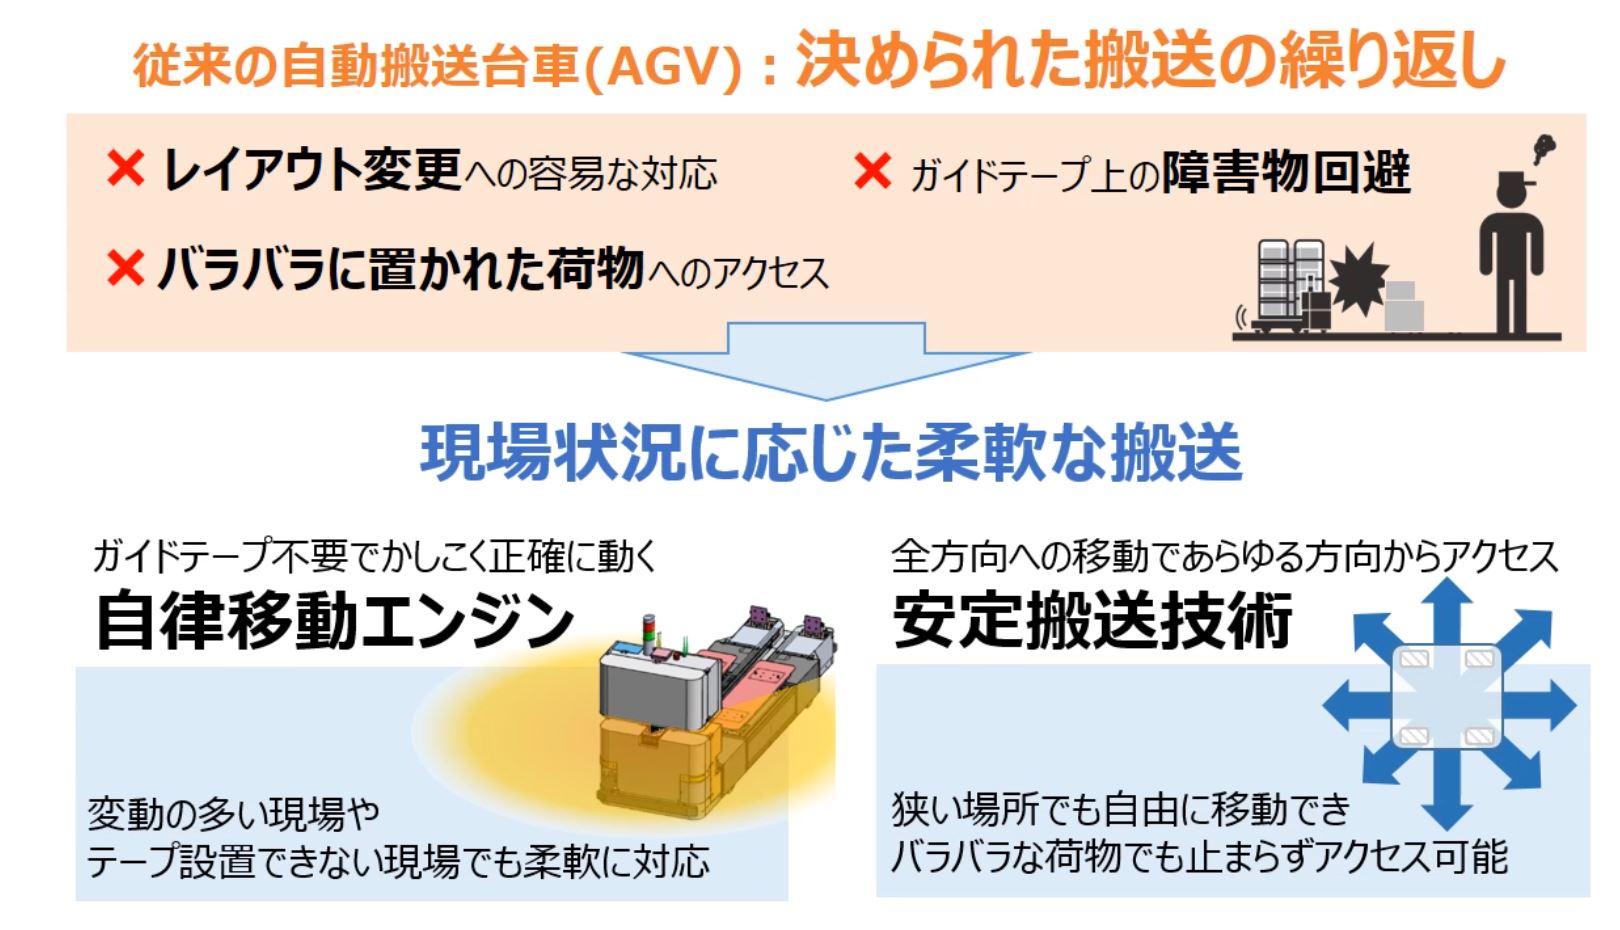 従来の自動搬送台車（AGV）と違い、自律移動ロボット（AMR）に求められる機能